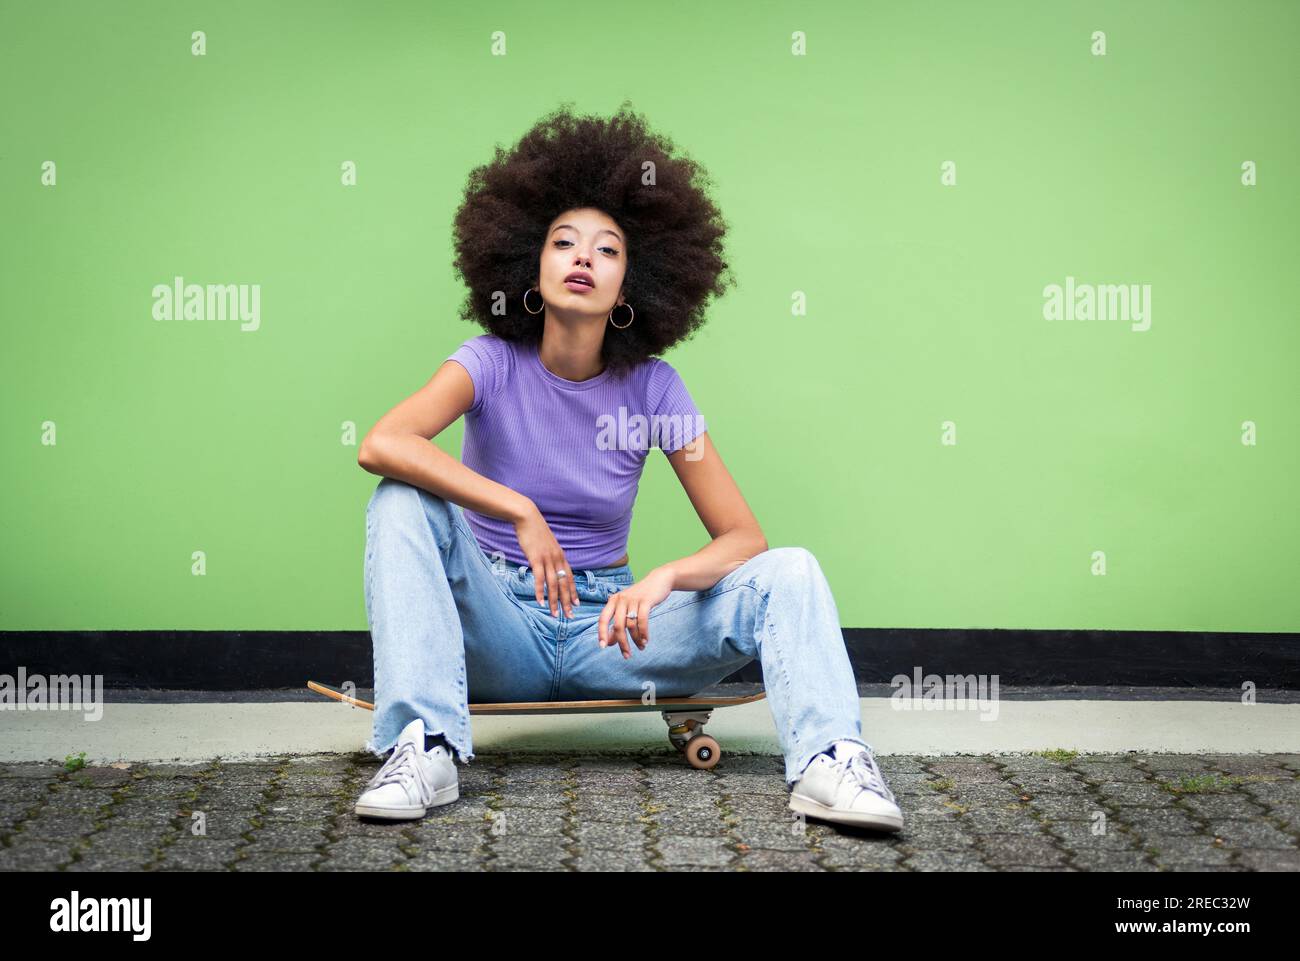 Der ganze Körper einer jungen afrikanischen Frau in Afro-Frisur und legerer Kleidung mit Make-up sitzt auf dem Skateboard über dem Terrassenboden und schaut auf Kamera aga Stockfoto